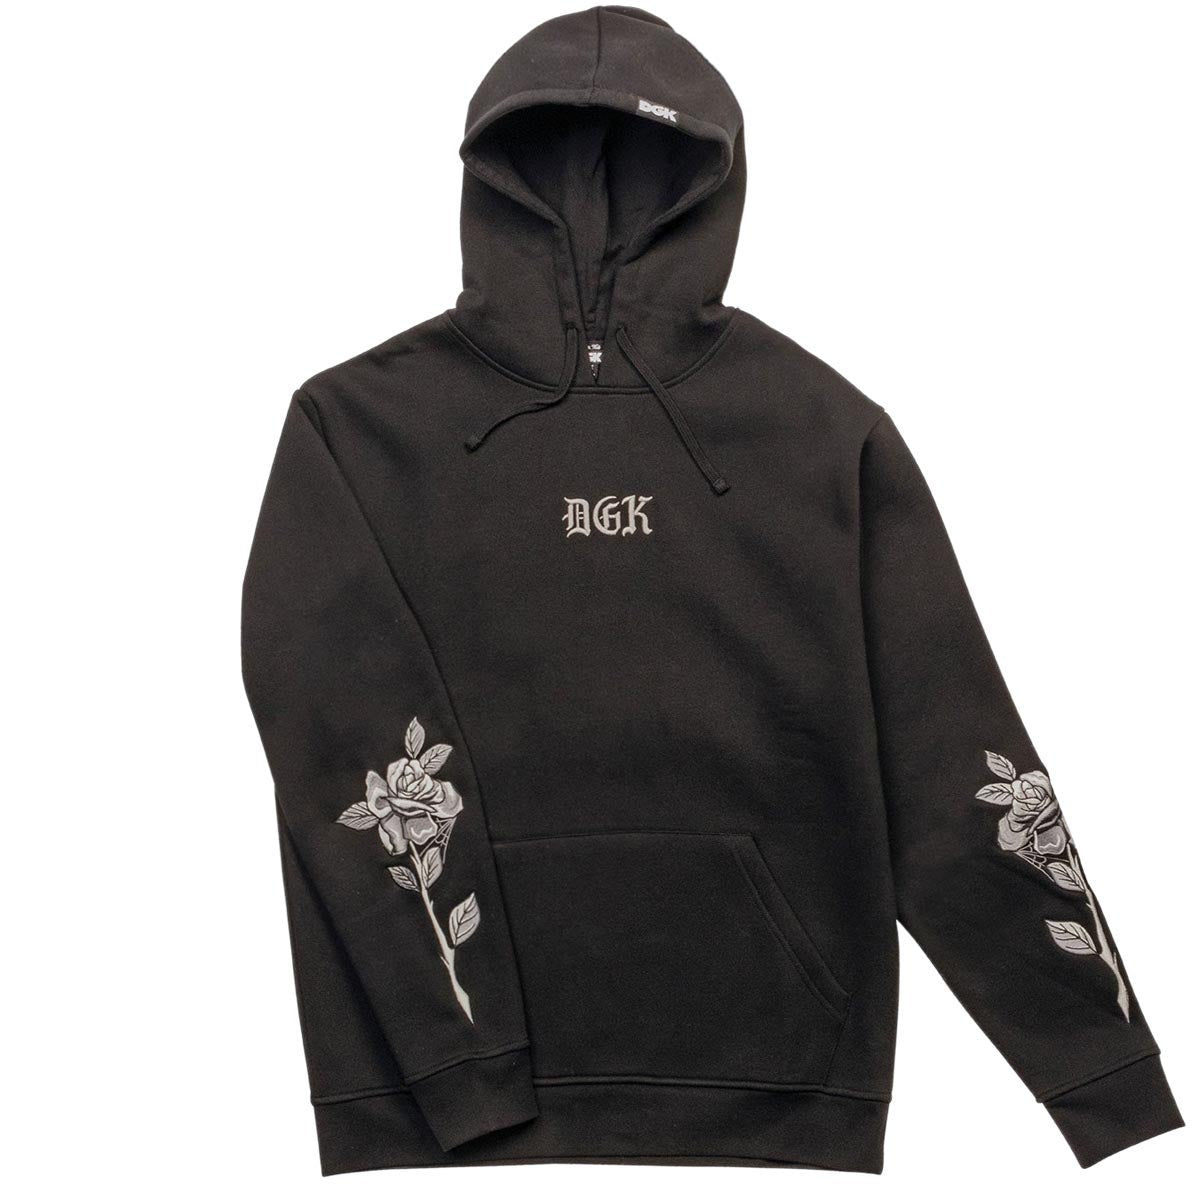 DGK Stay True Hooded Fleece Jacket - Black image 3